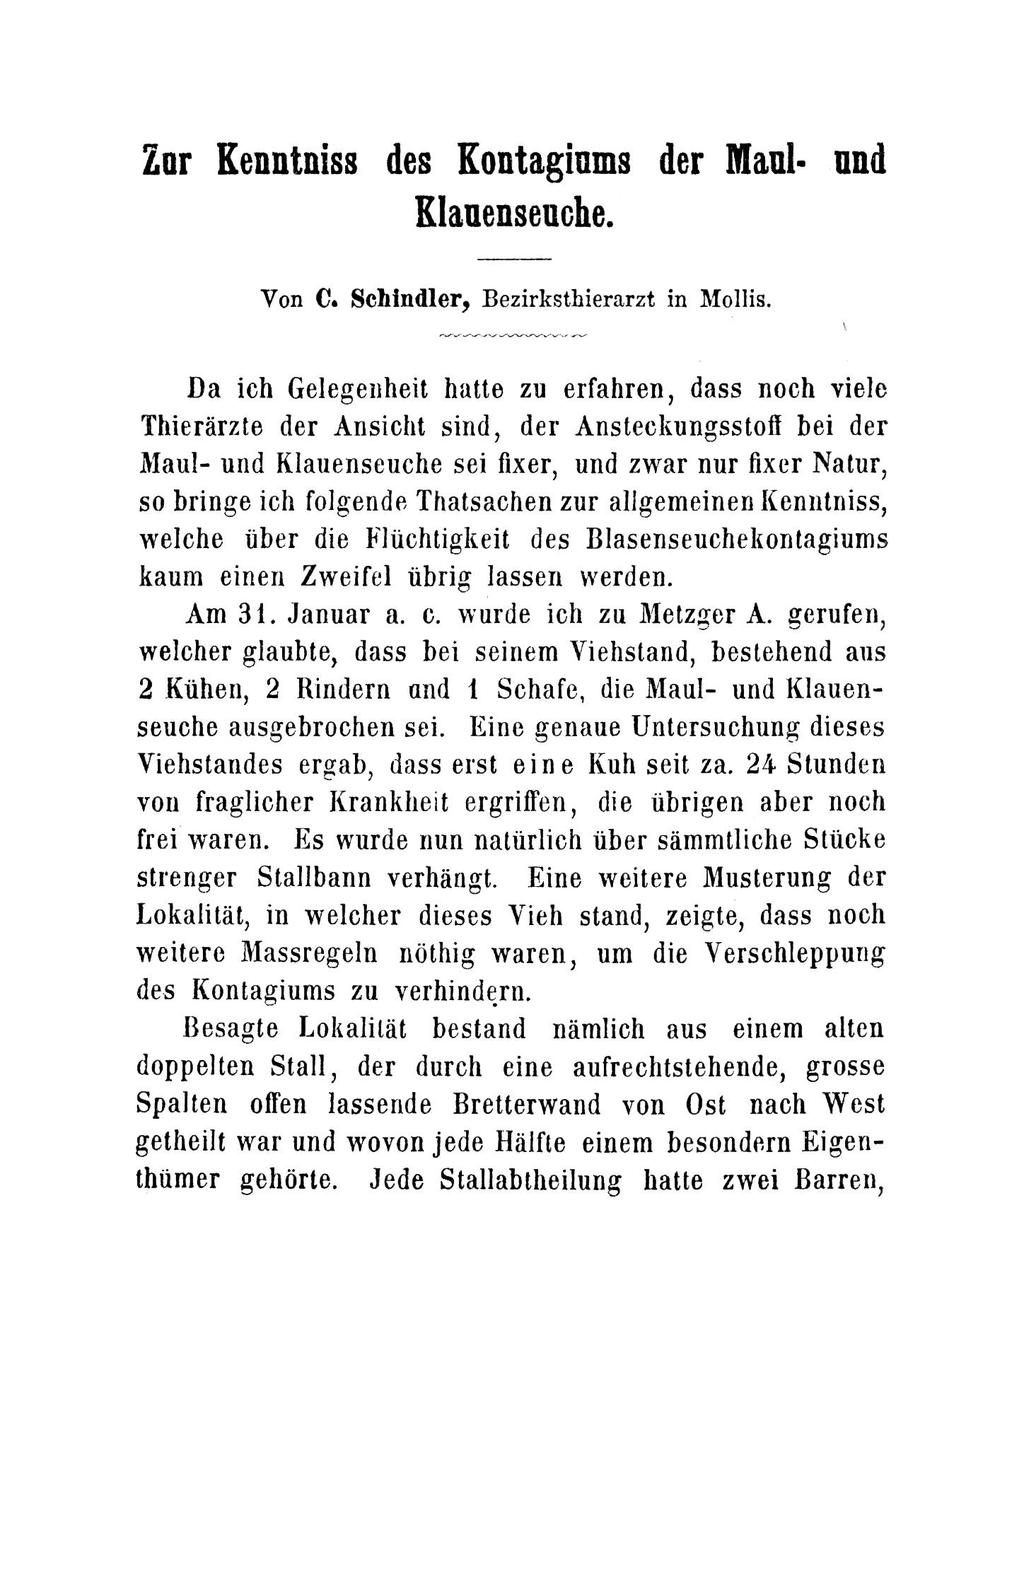 Zar Keantniss des Kontaginms der Maul- and Klauenseuche. Von C. Schindler, Bezirksthierarzt in Mollis.